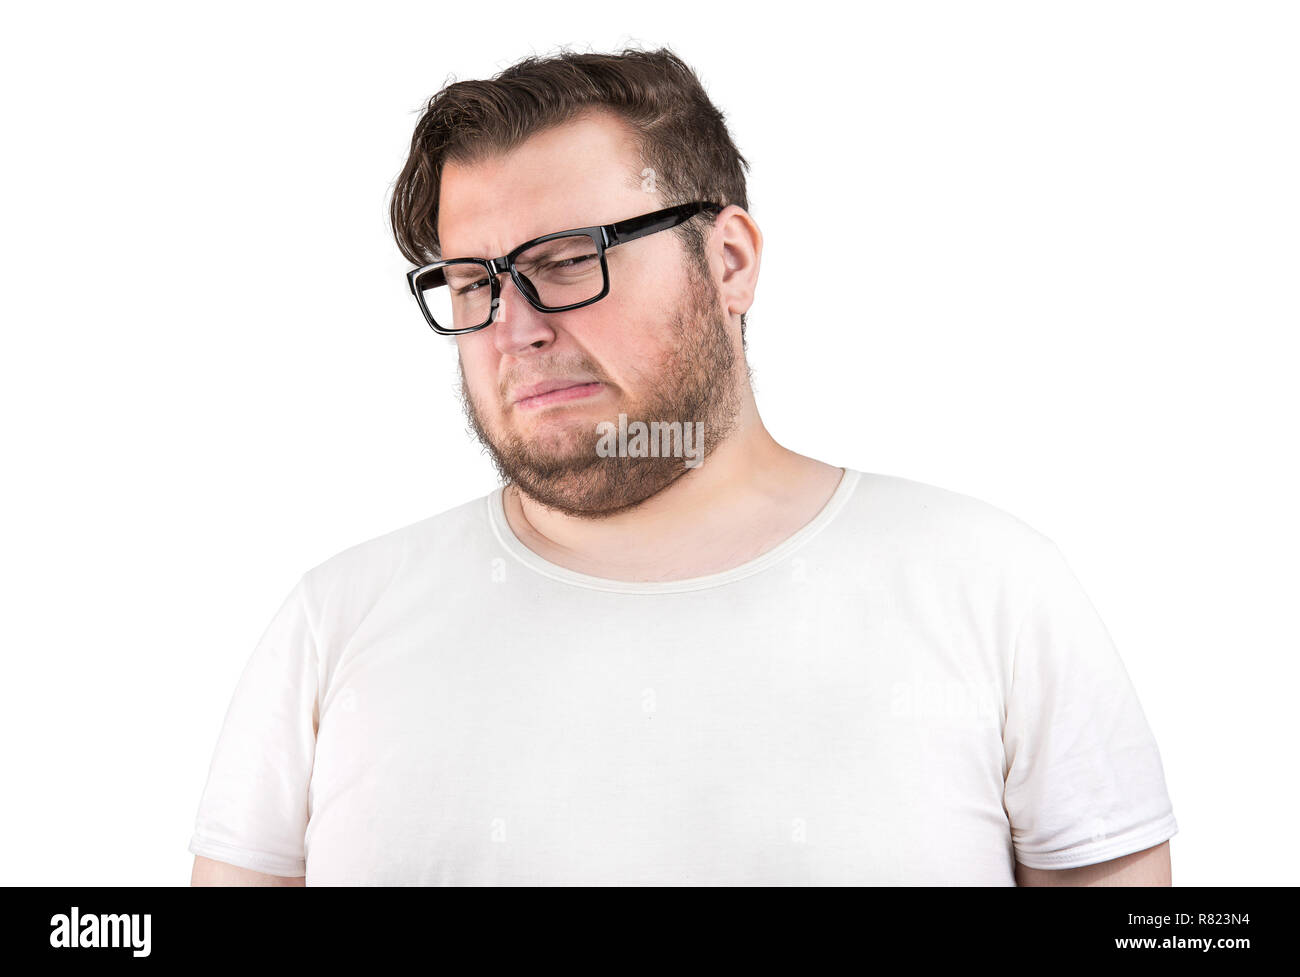 Giovane uomo barbuto in bicchieri accigliata del cattivo odore cercando profondamente dispiaciuto su sfondo bianco Foto Stock